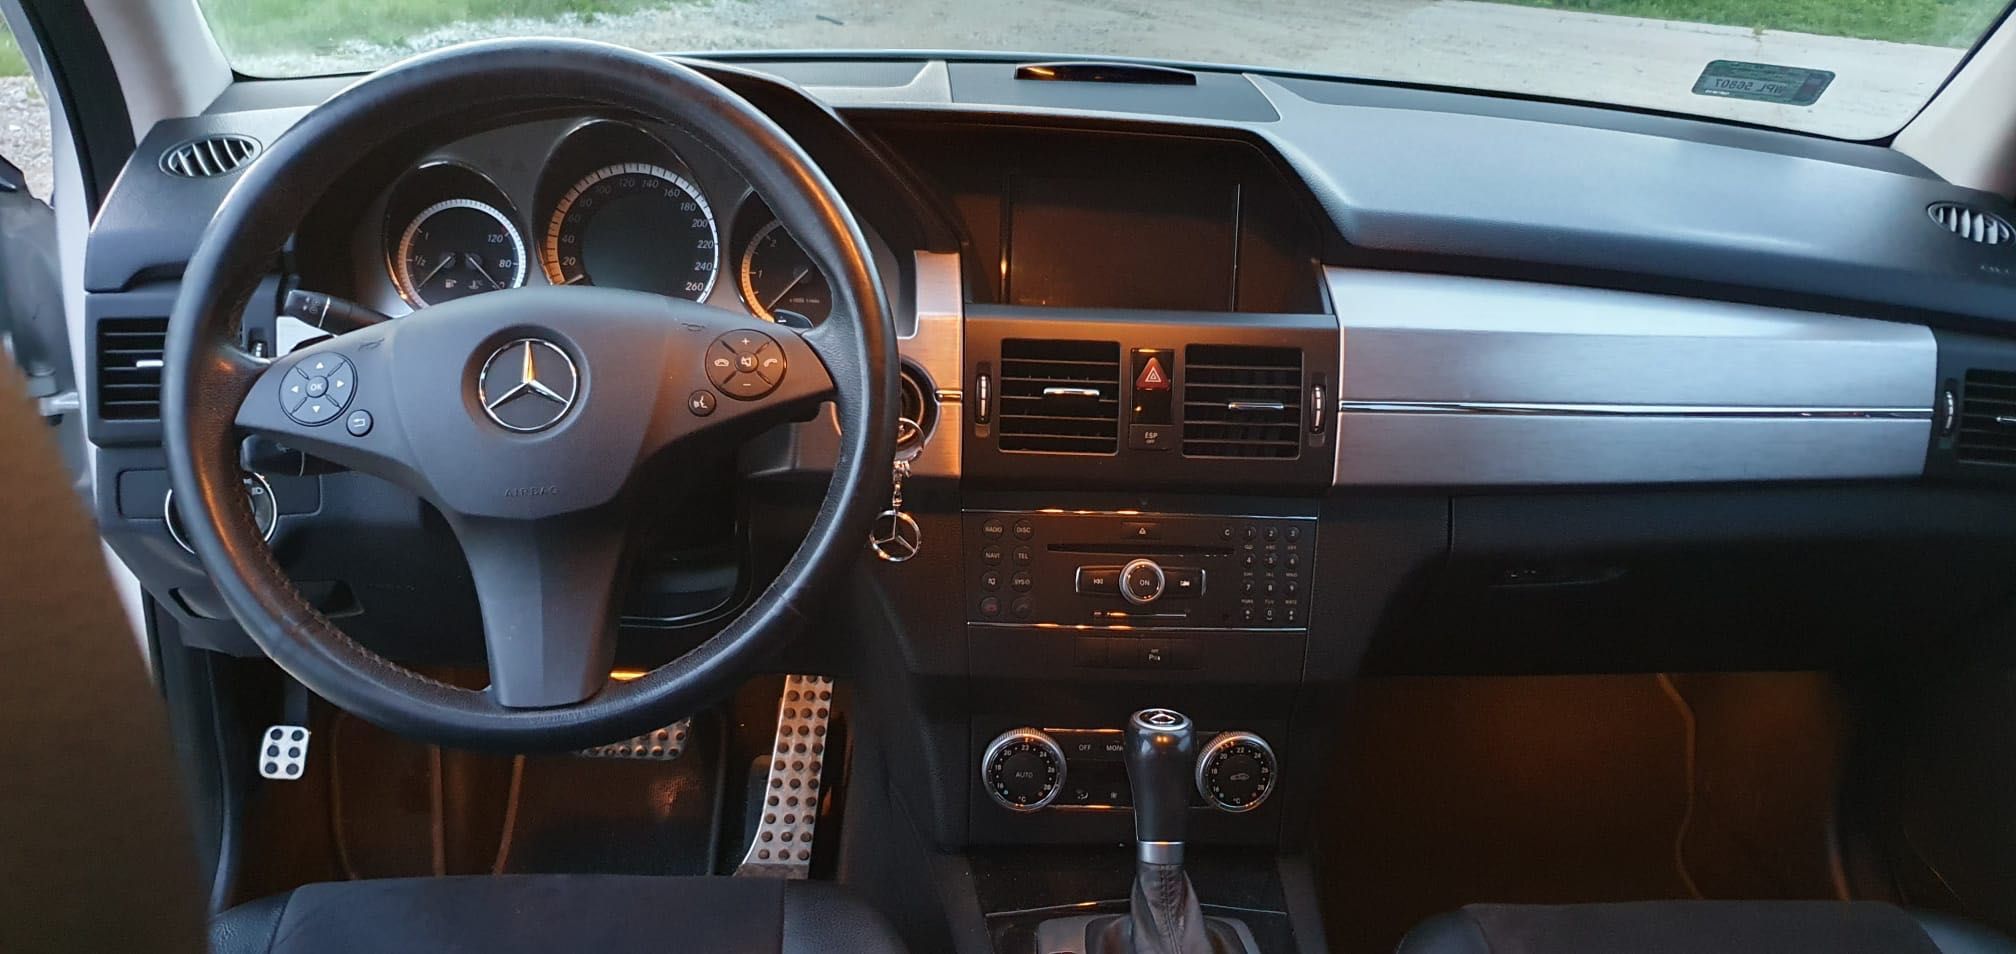 Mercedes-Benz GLK320 CDI 4MATIC - wersja sport 224 KM